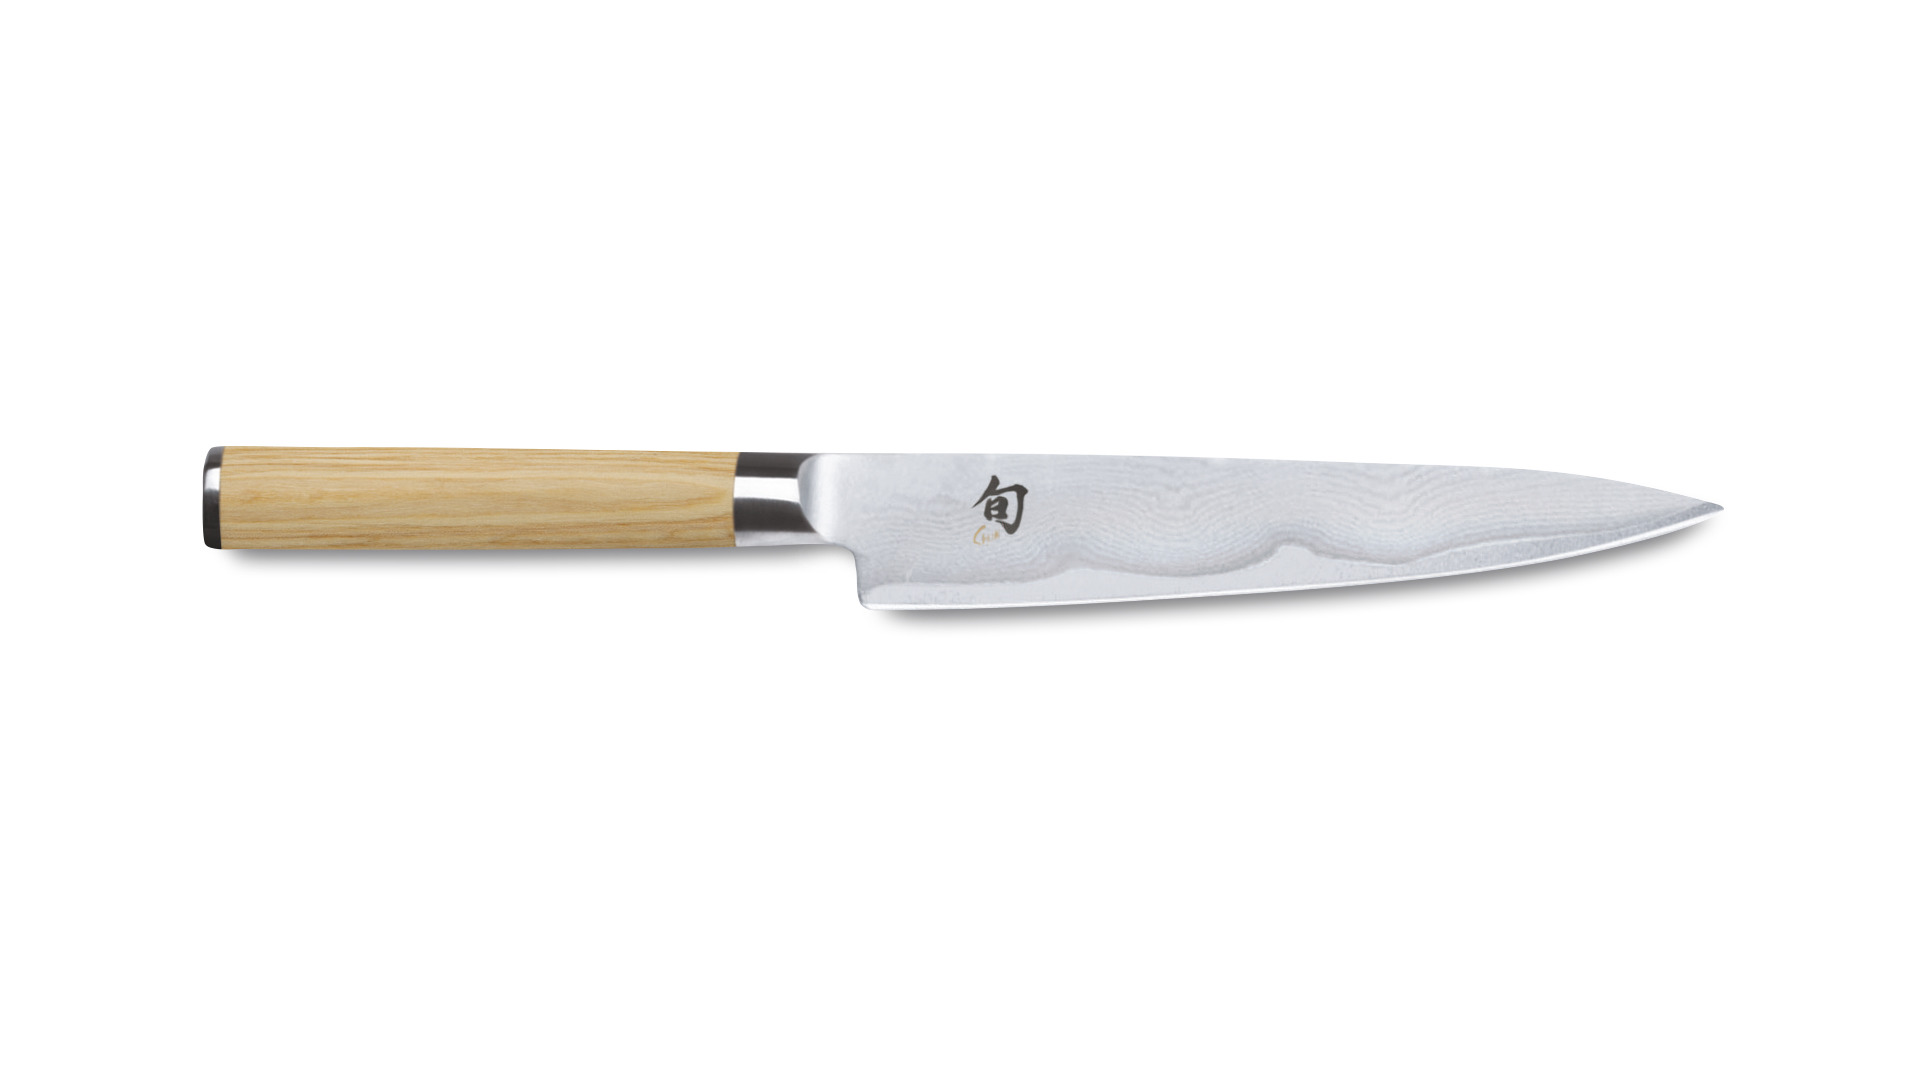 Нож кухонный универсальный KAI Шан Классик белый 15 см, дамасская сталь, 32 слоя